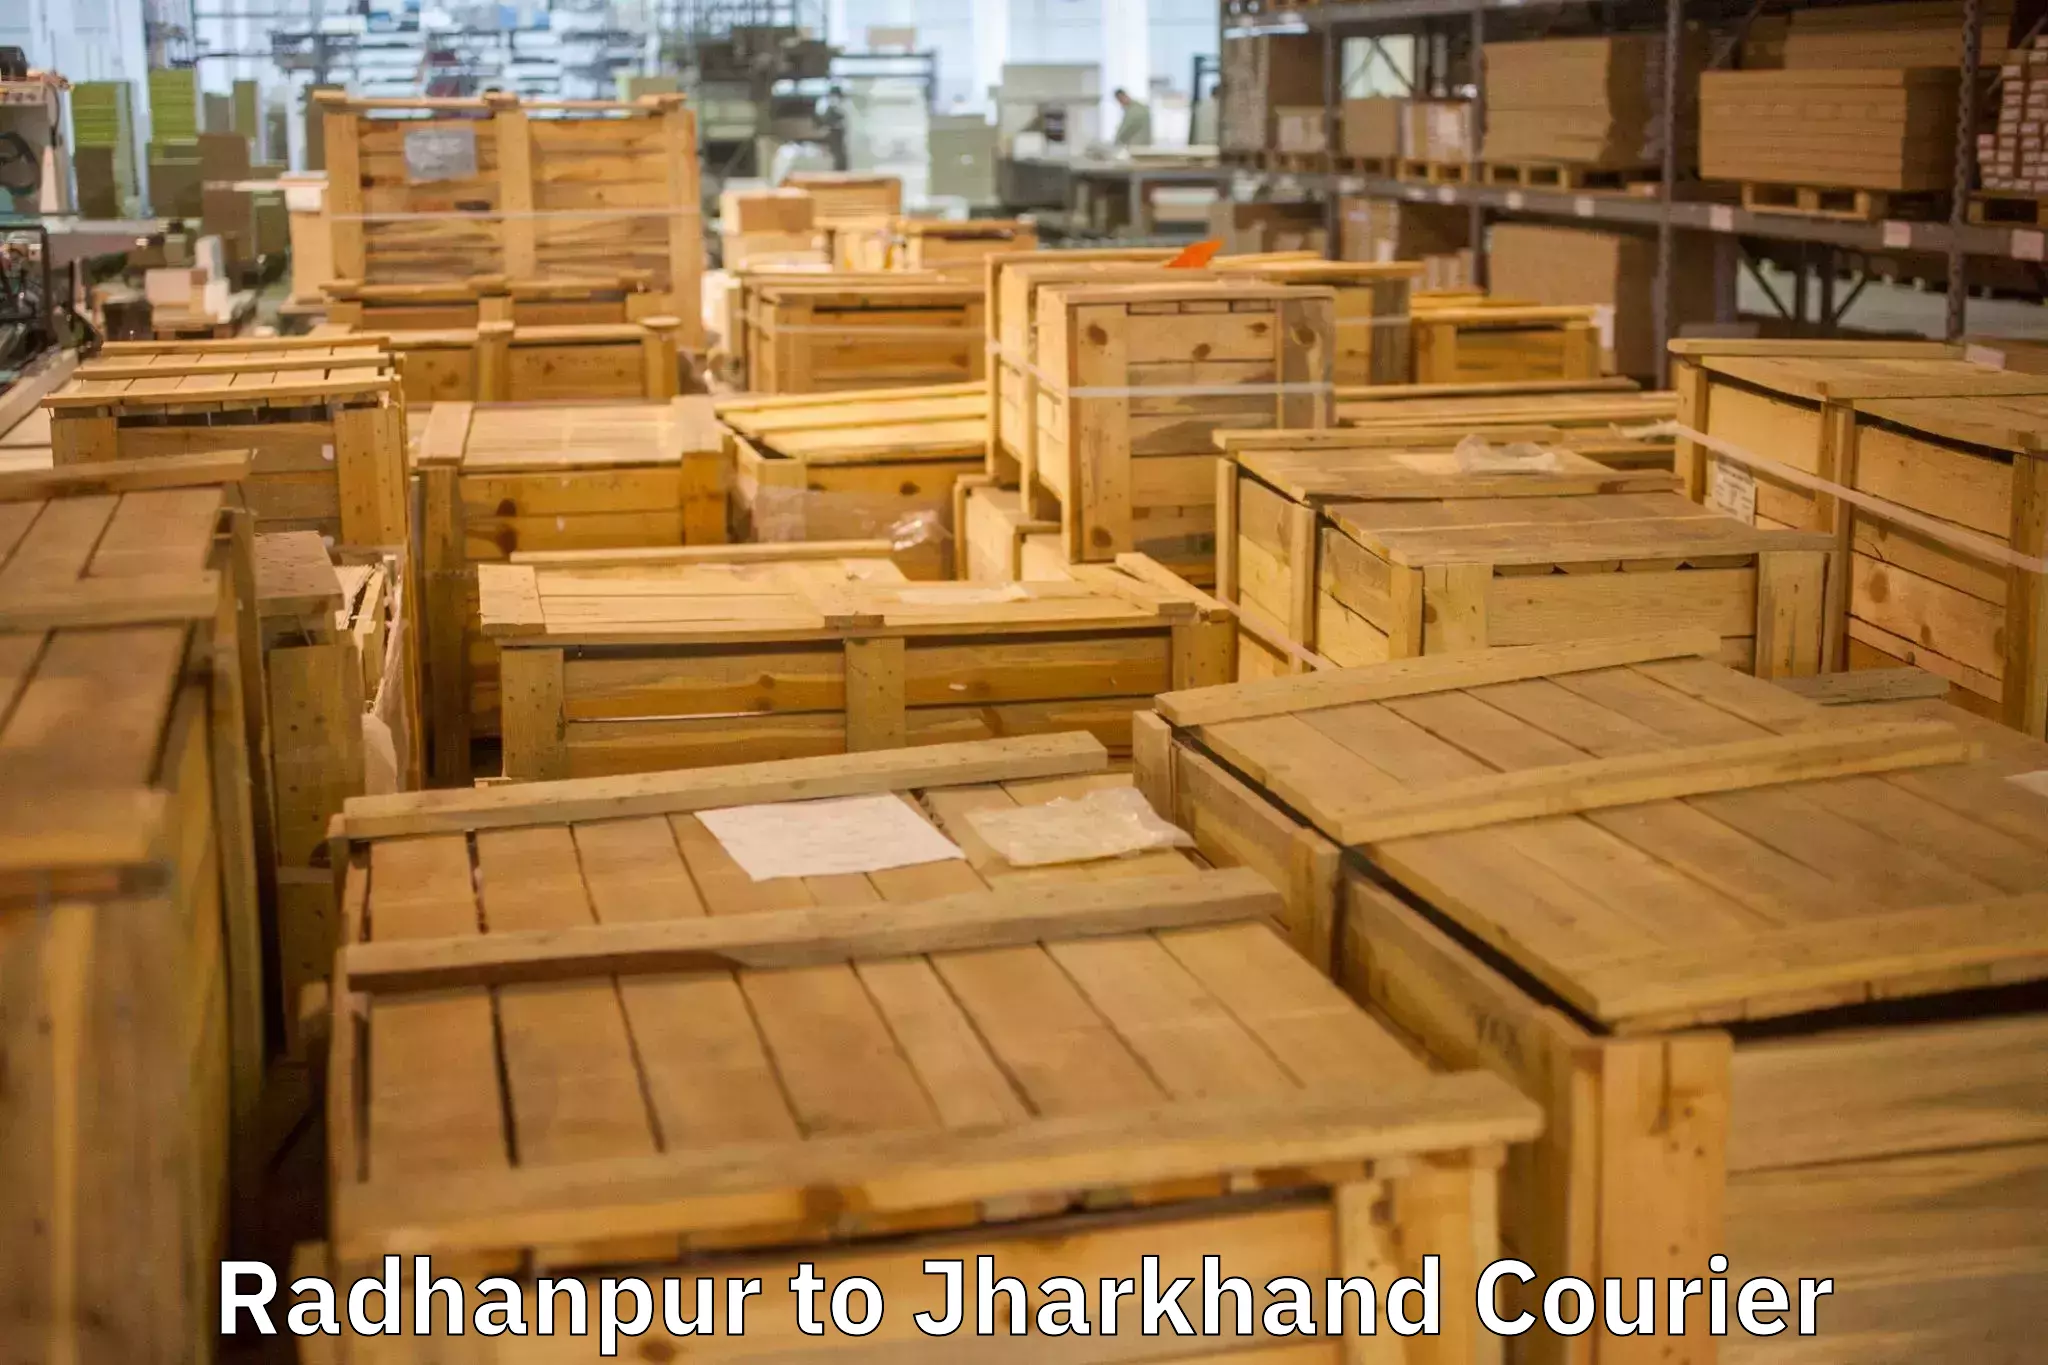 Residential furniture movers Radhanpur to Bokaro